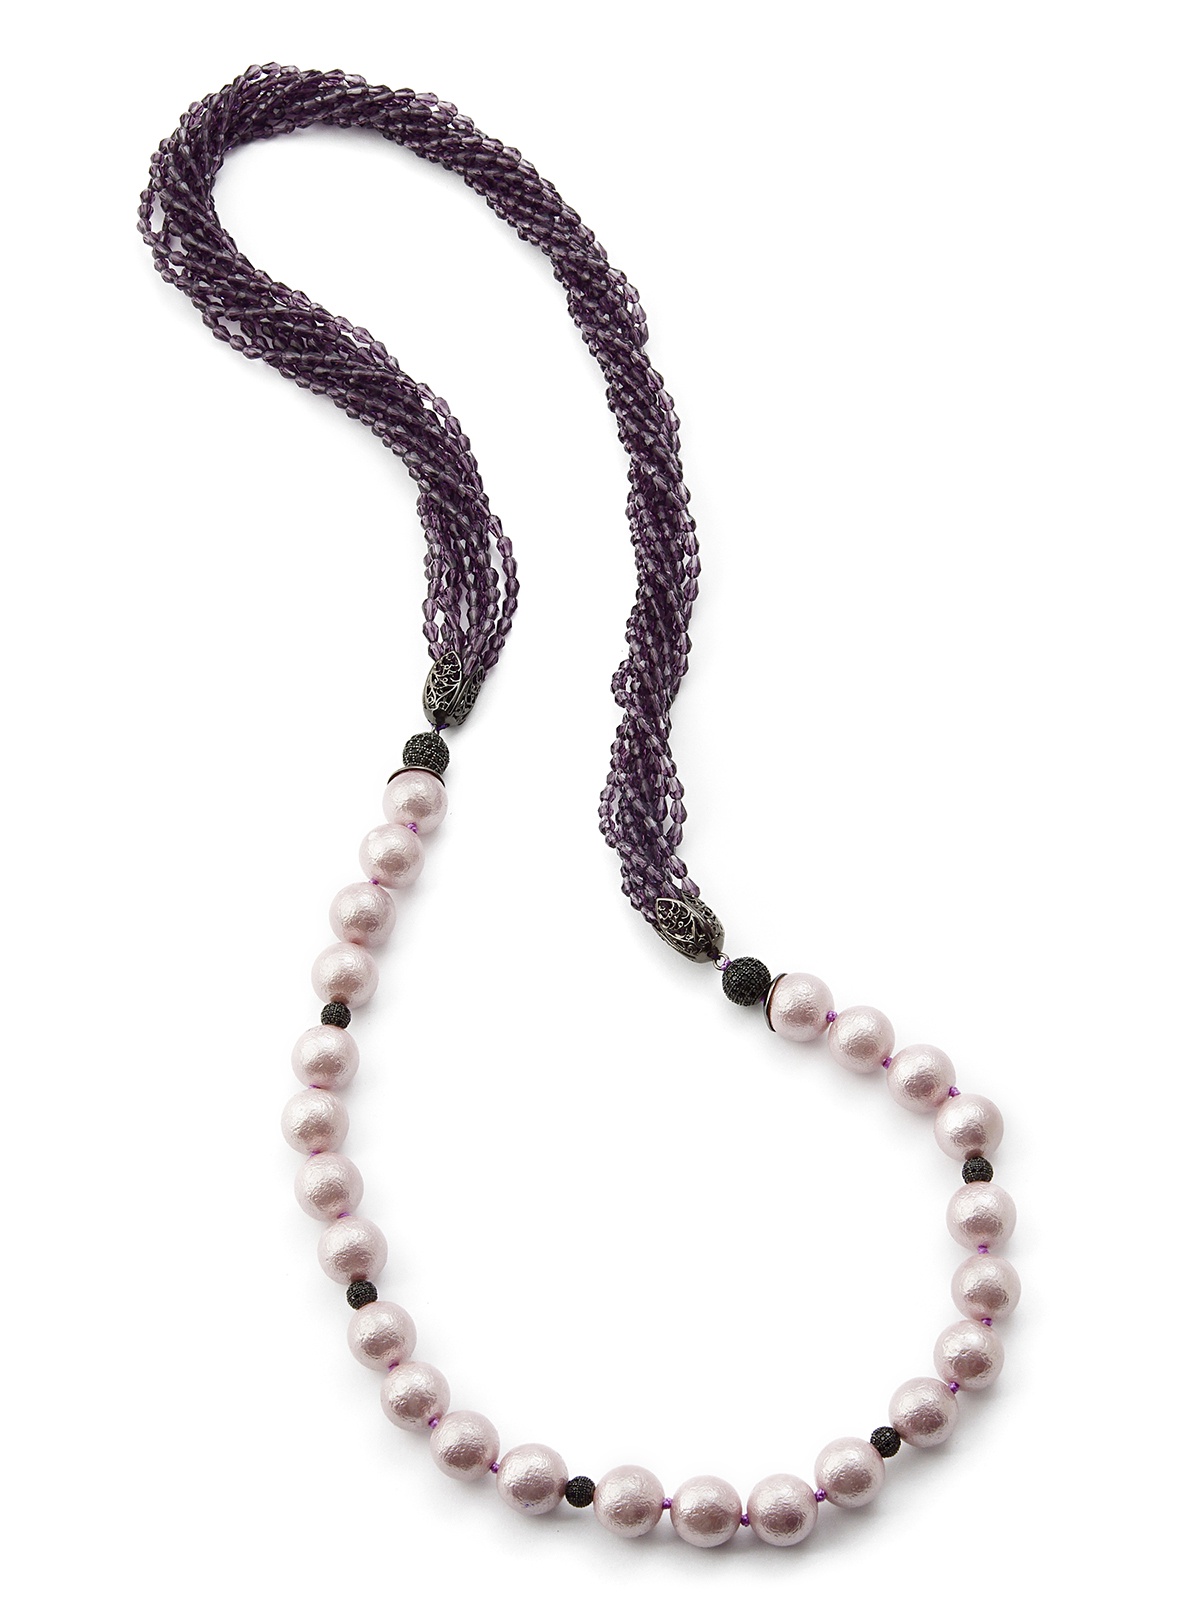 фото Колье/ожерелье бижутерное ЖемАрт с541-922, Искусственный жемчуг, Кварц, Бижутерный сплав, 85 см, сиреневый, фиолетовый, черный